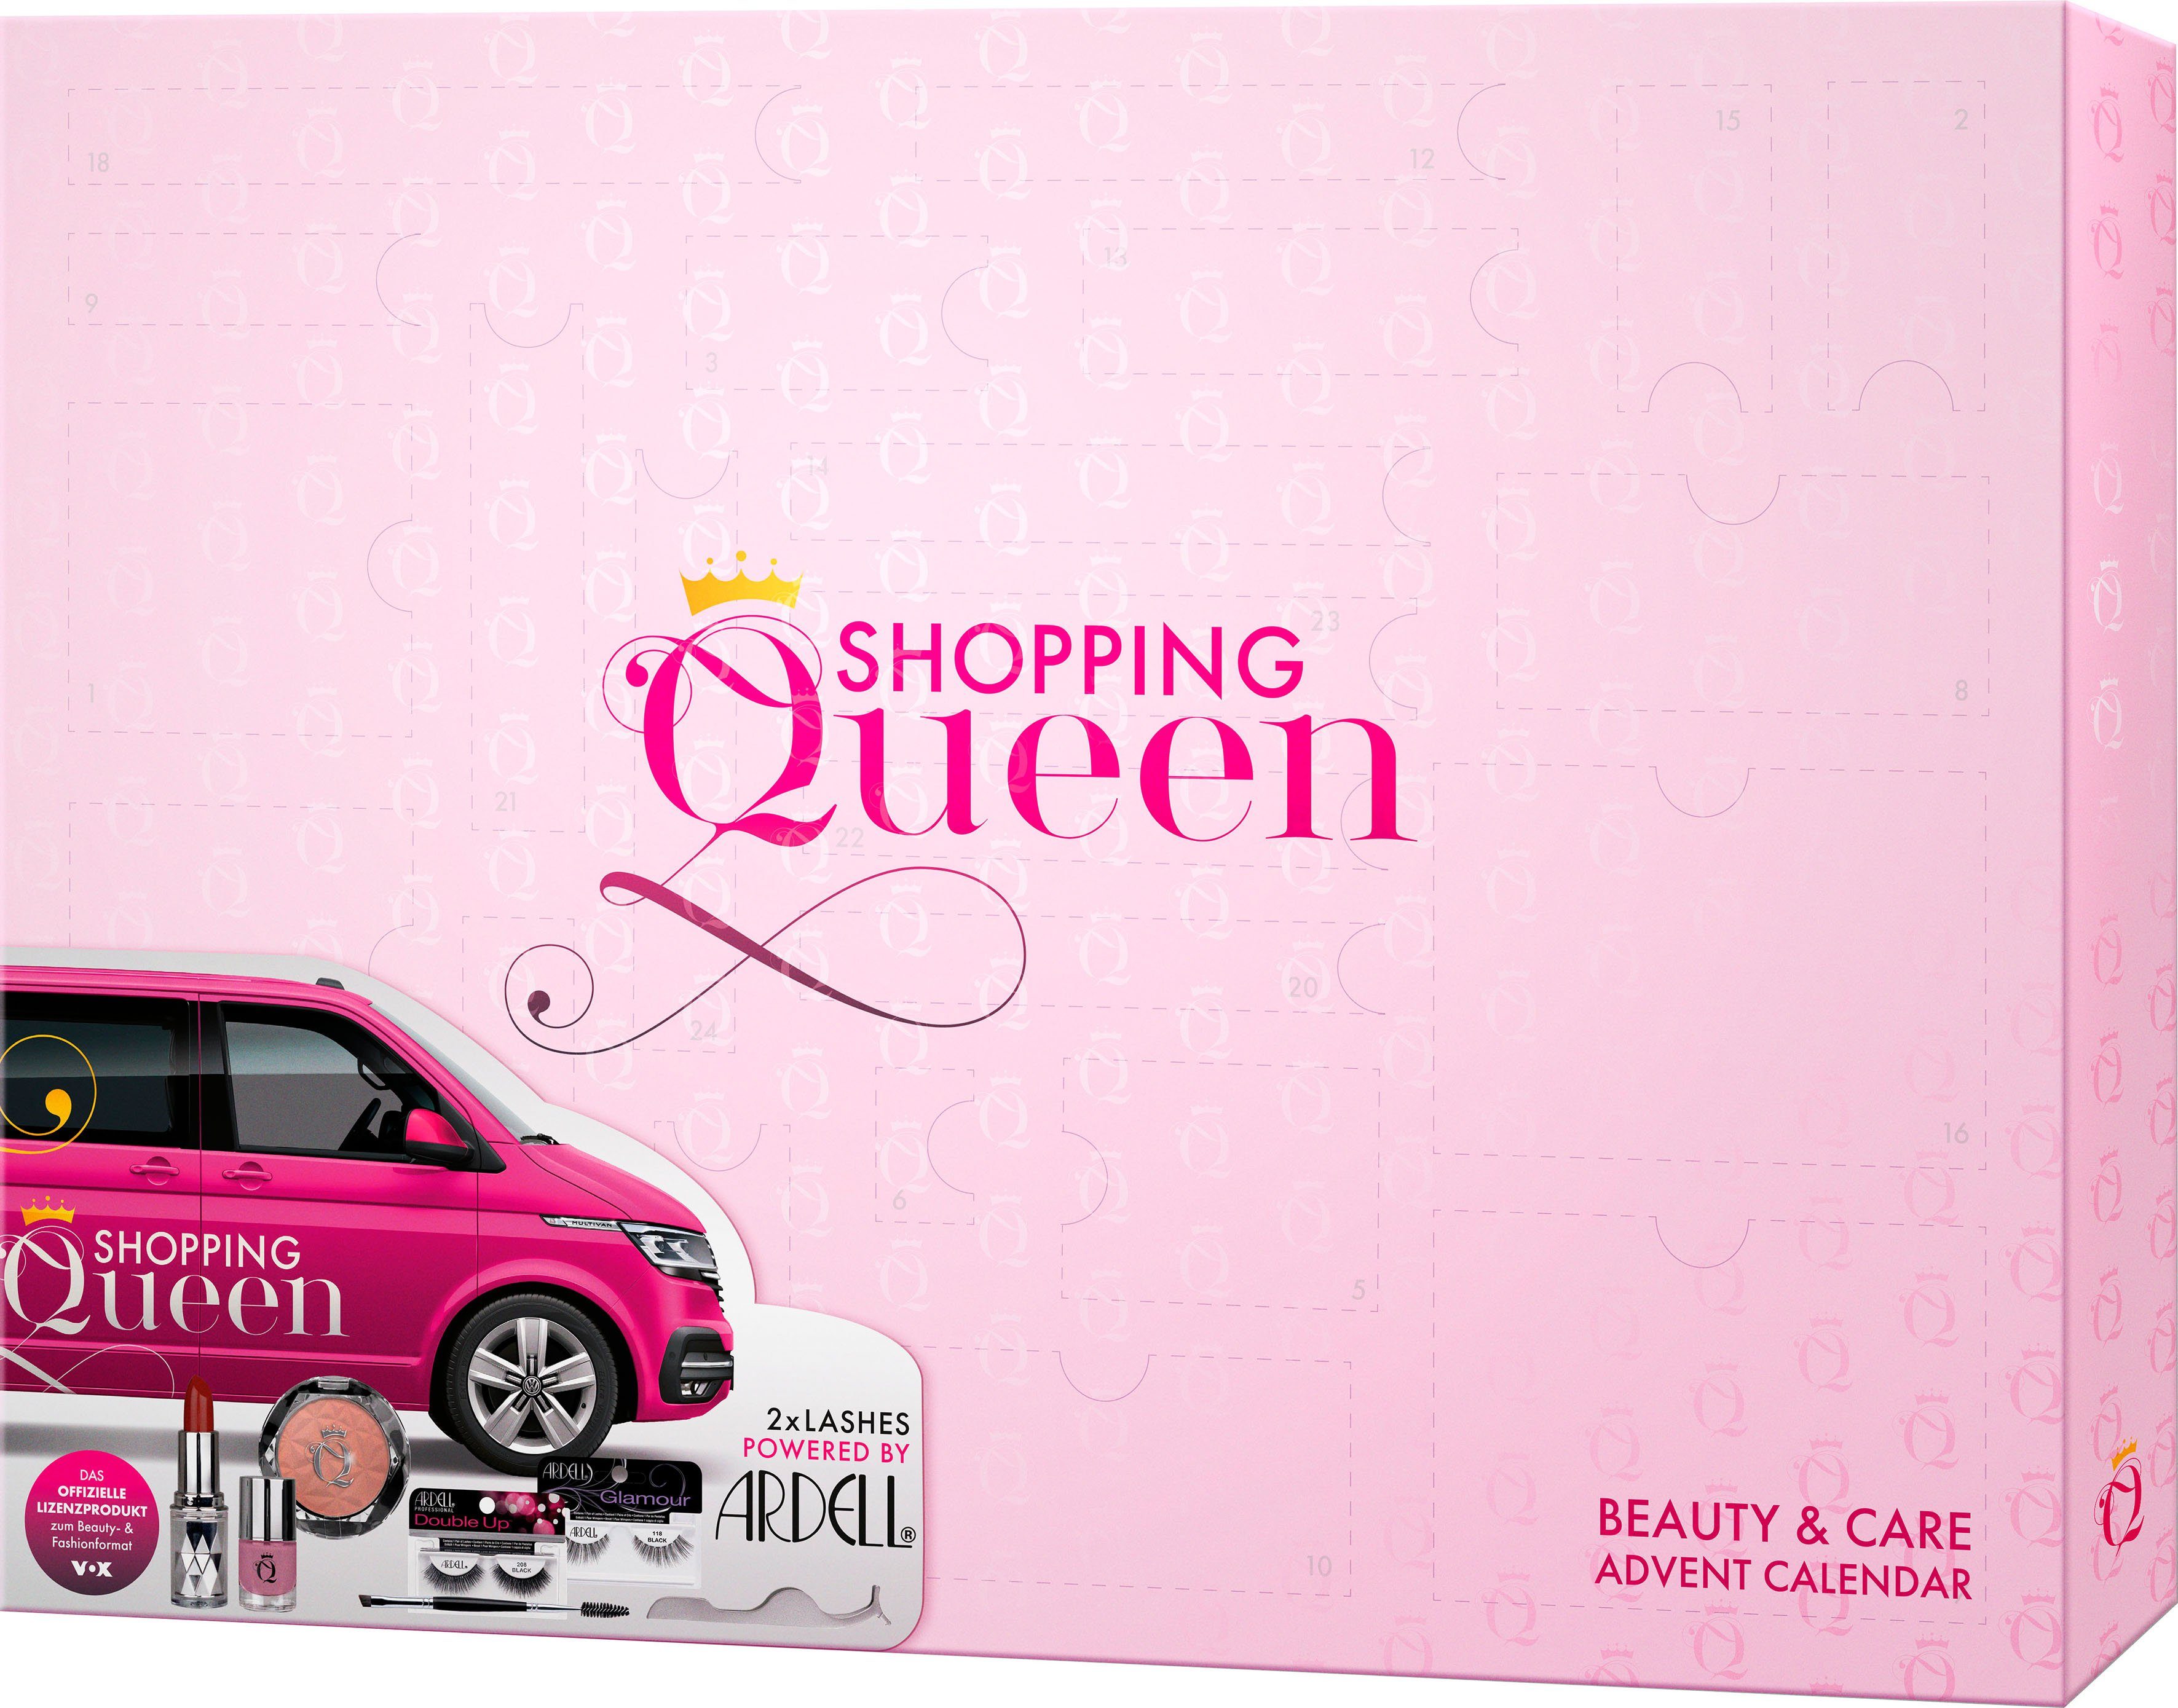 Shopping Queen Adventskalender Queen Shopping meets ARDELL